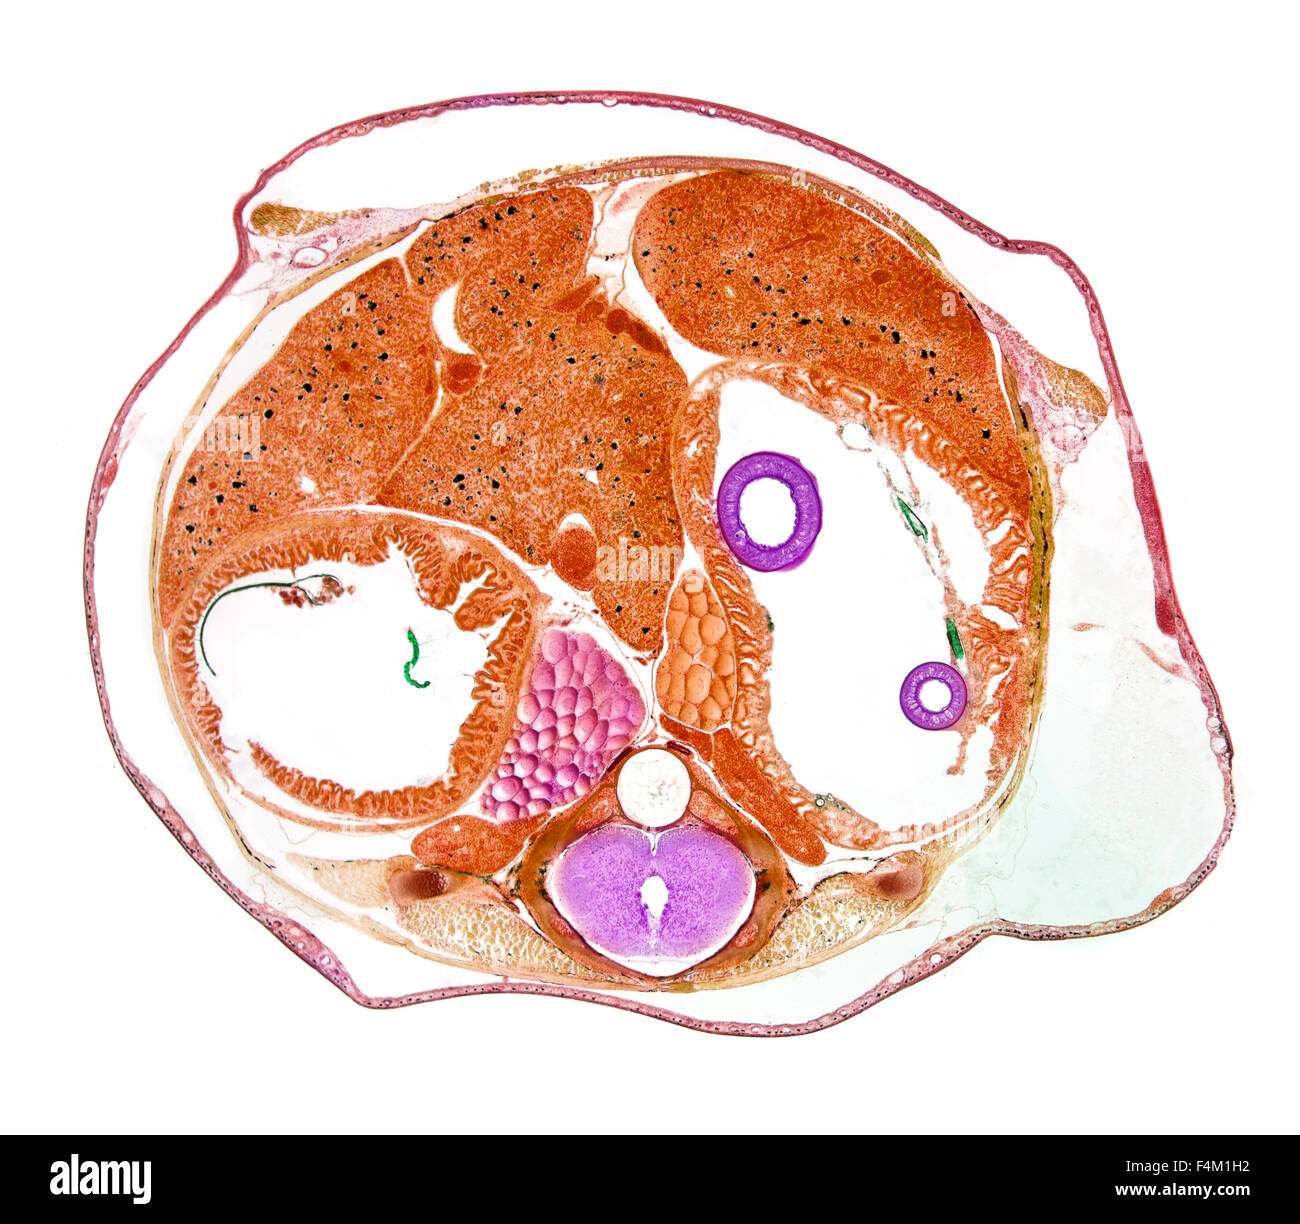 Rana comune, rana temporia, campo chiaro fotomicrografia, torace TS. colorate in sezione mostrante fisiologia interna Foto Stock